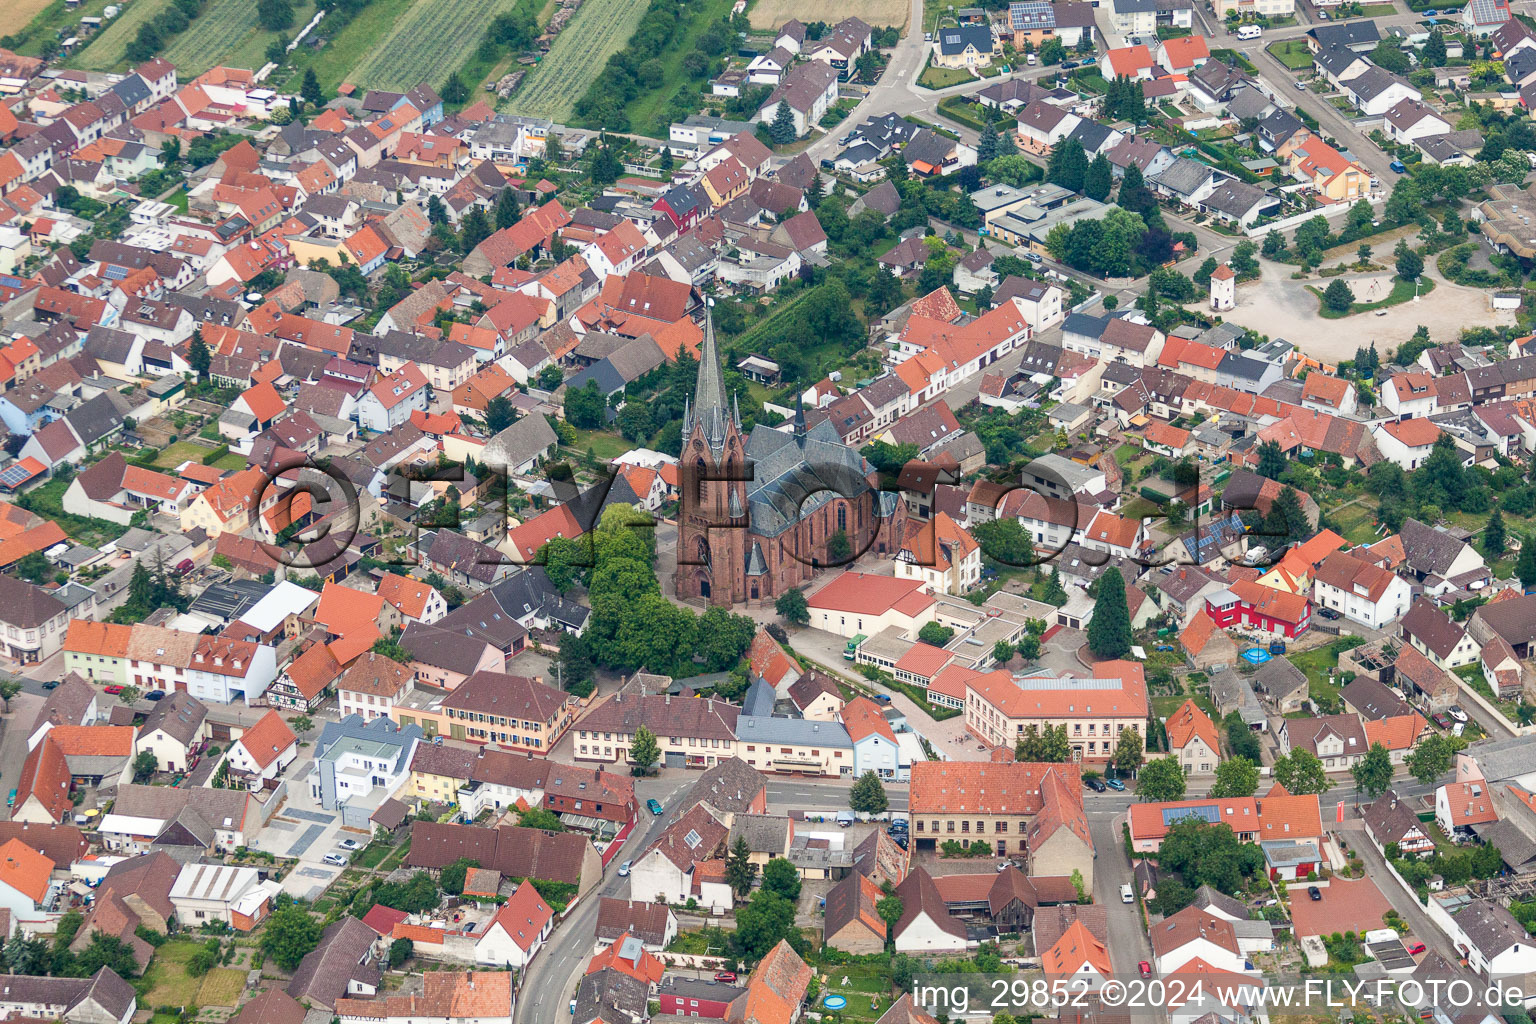 Luftbild von Ortsansicht der Straßen und Häuser der Wohngebiete im Ortsteil Rheinsheim in Philippsburg im Bundesland Baden-Württemberg, Deutschland